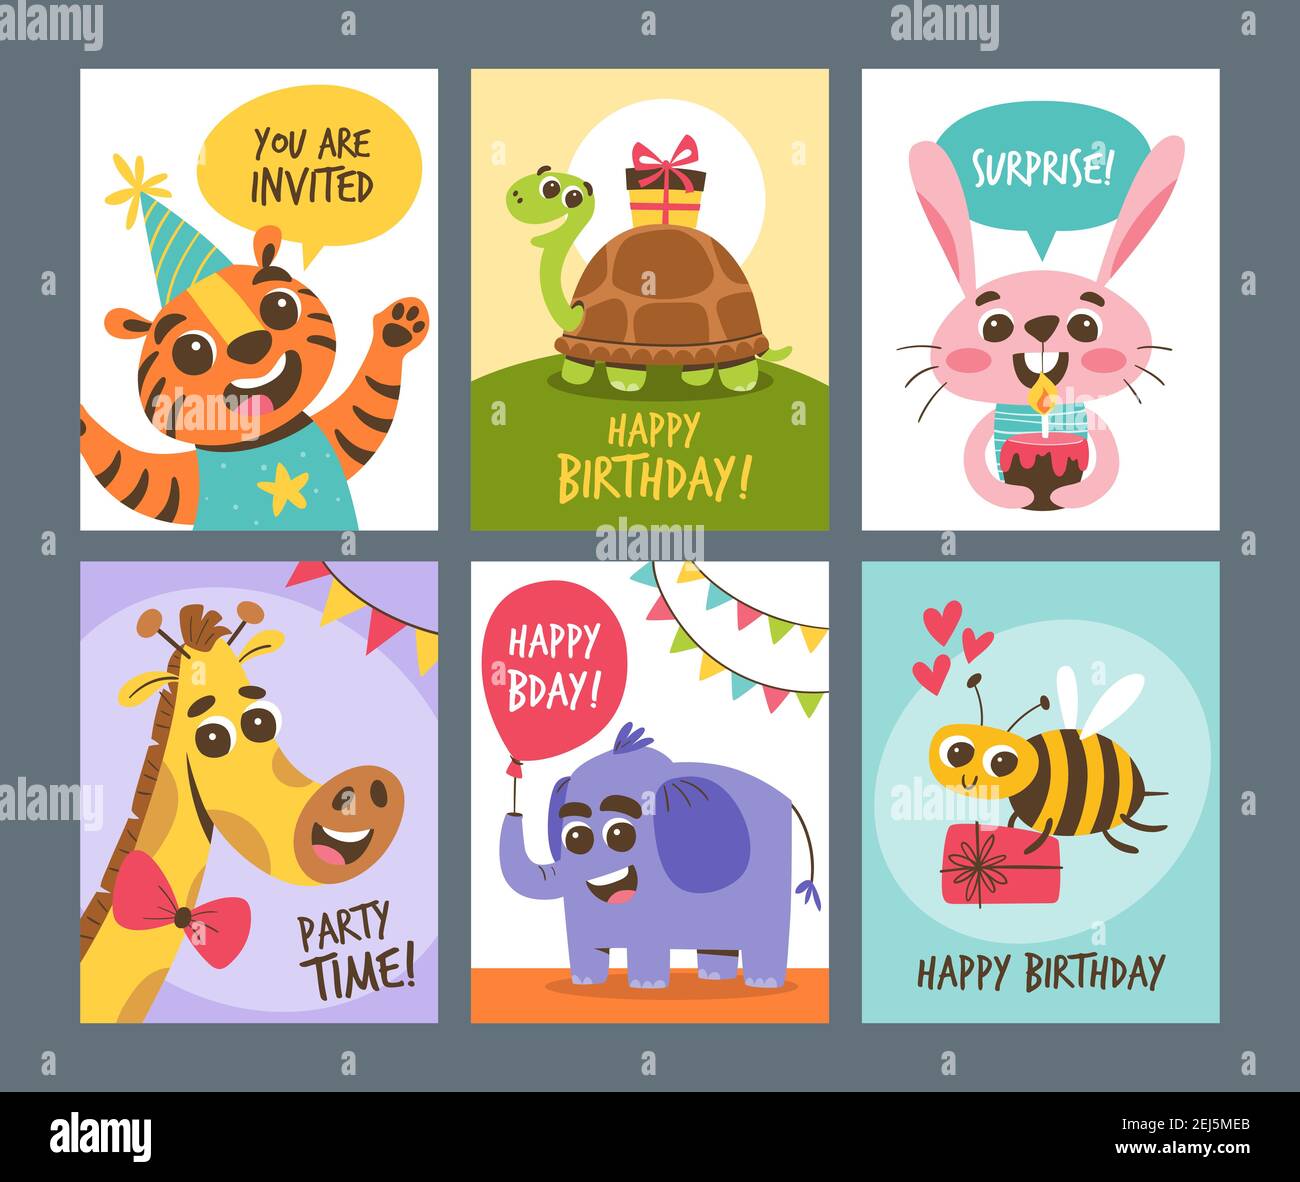 Niedliche Tierkarten. Geburtstagskarte Sammlung, perfekt für Grüße und Einladungen. Niedliche Cartoon Tier-Design. Stock Vektor